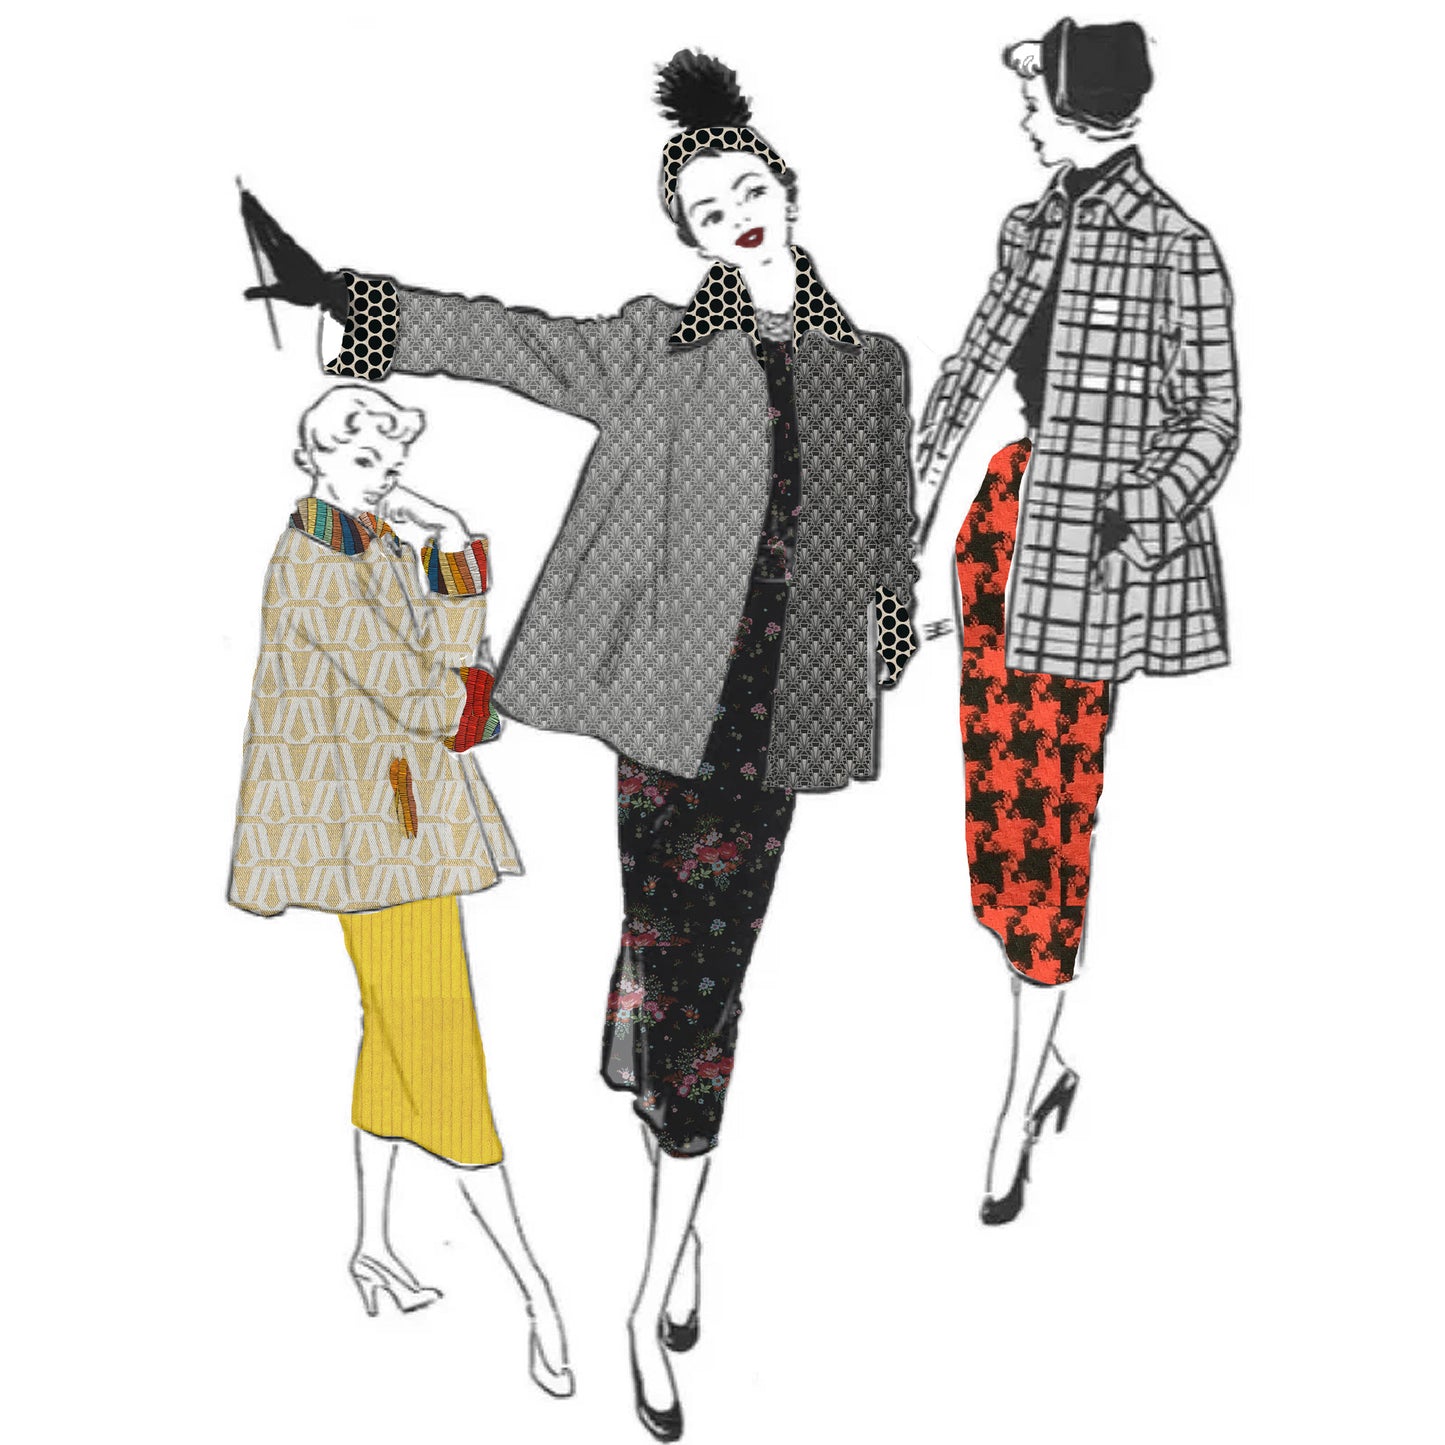 1950s Pattern, Women's Swing Jacket with Pockets - Bust 36" (91.4cm)